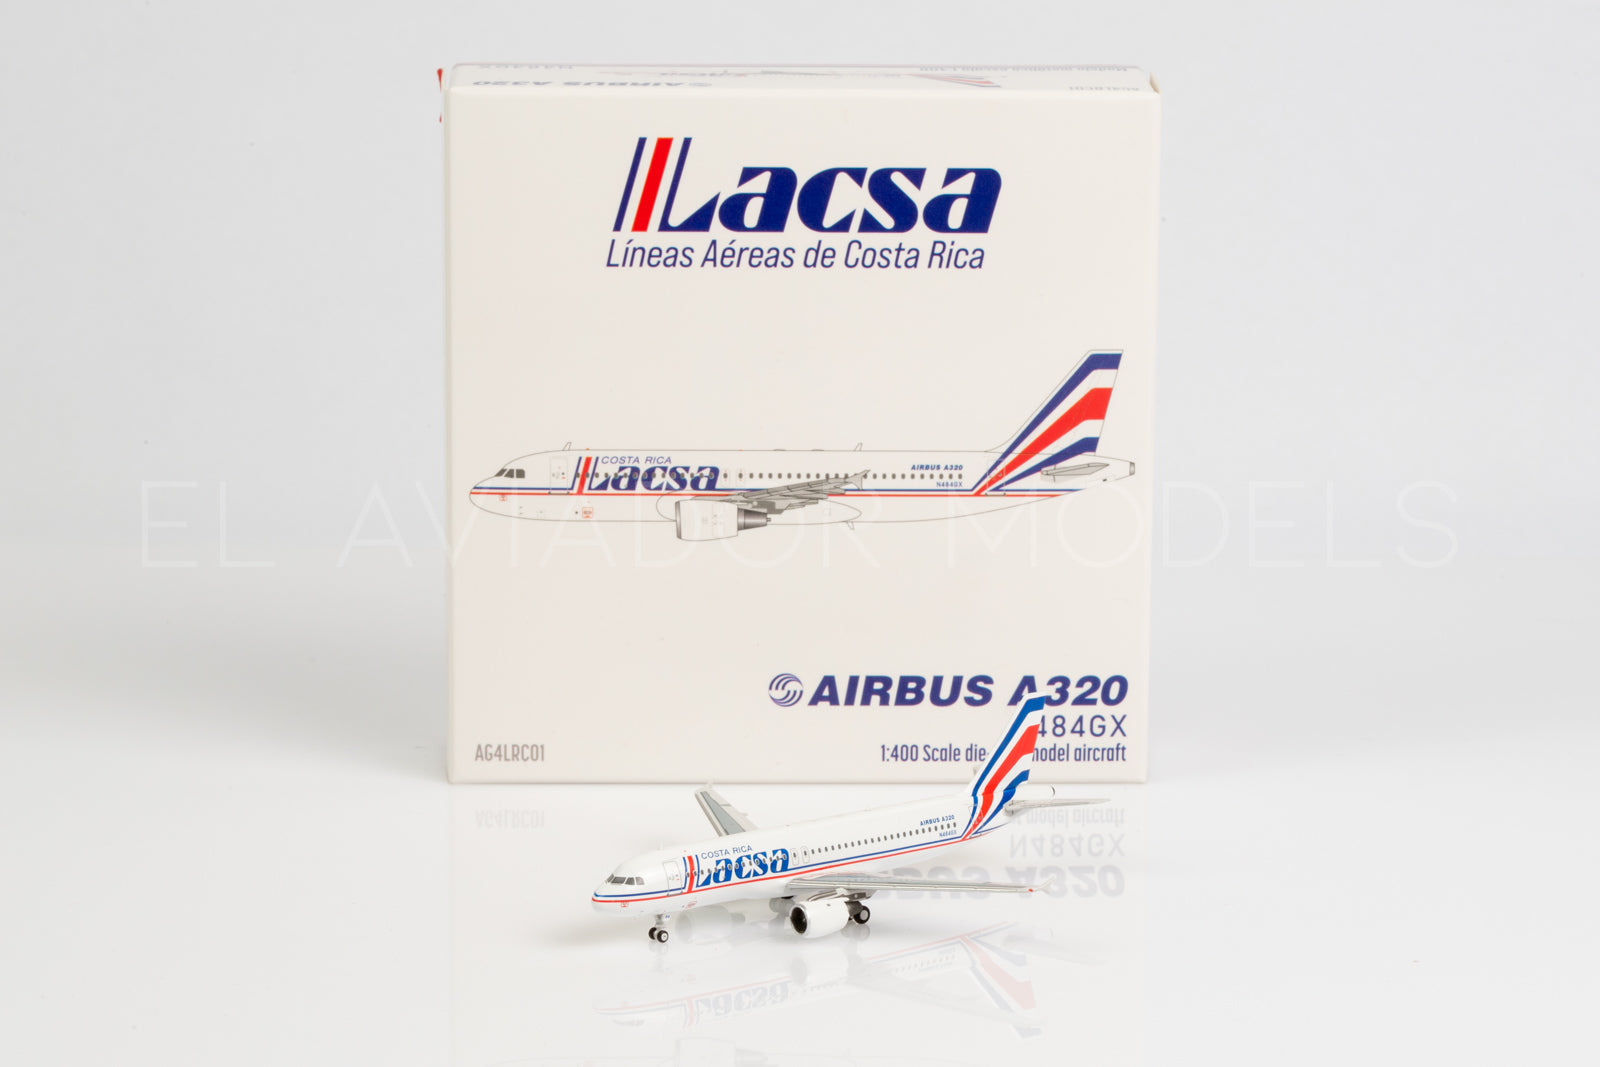 Lacsa / Airbus A320 / N484GX / AG4LRC01 / 1:400